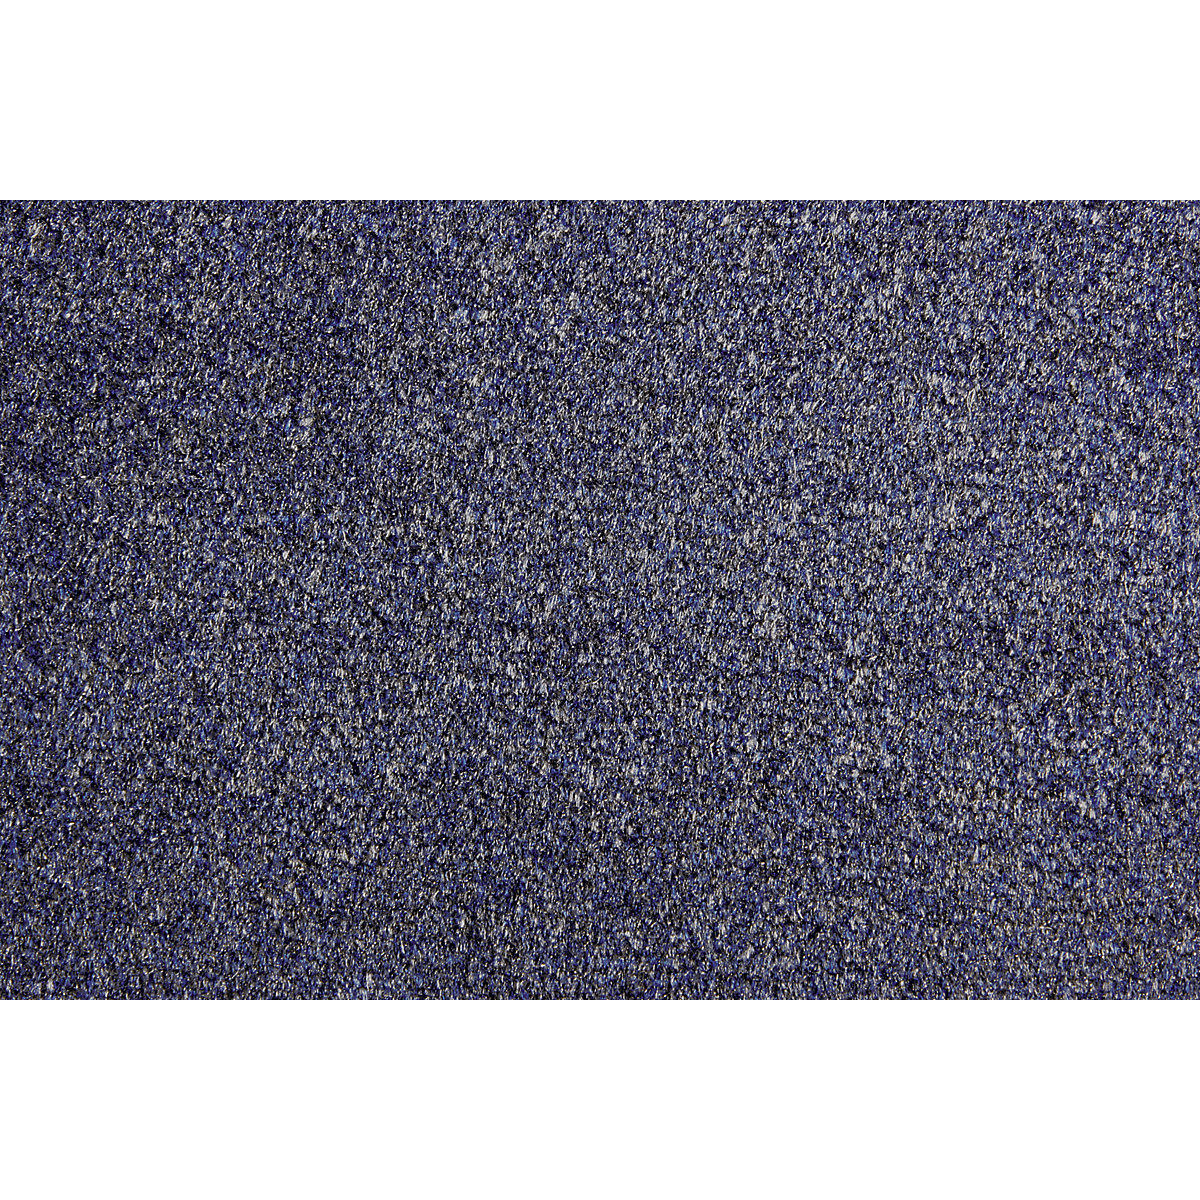 Mata wychwytująca brud EAZYCARE AQUA, dł. x szer. 1800 x 1200 mm, niebieski